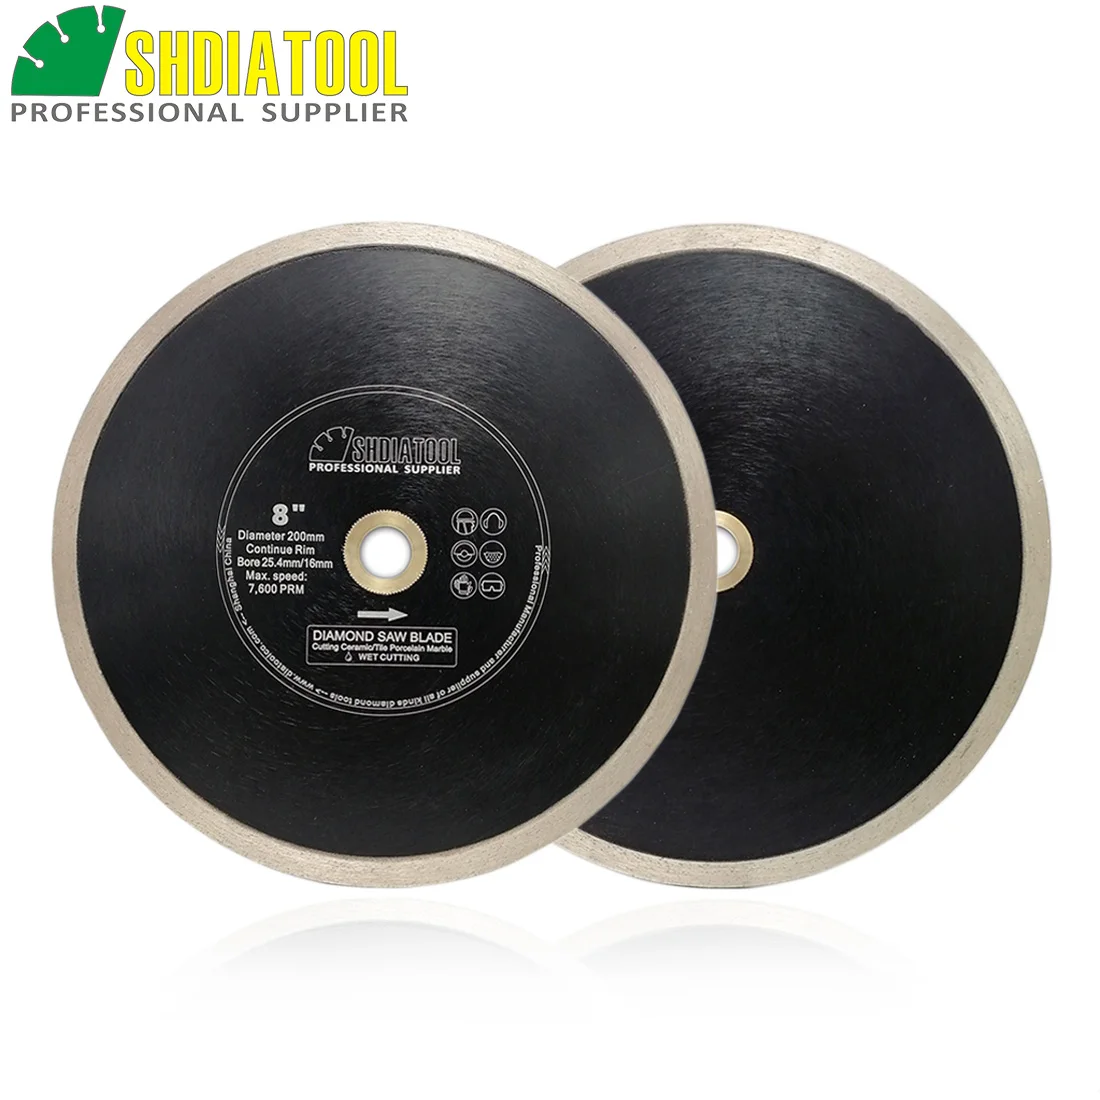 SHDIATOOL 2 шт. диаметр 200 мм/" или 250 мм/10" горячего прессования продолжить обод Алмазные пилы фарфоровая плитка керамический диск для резки мрамора